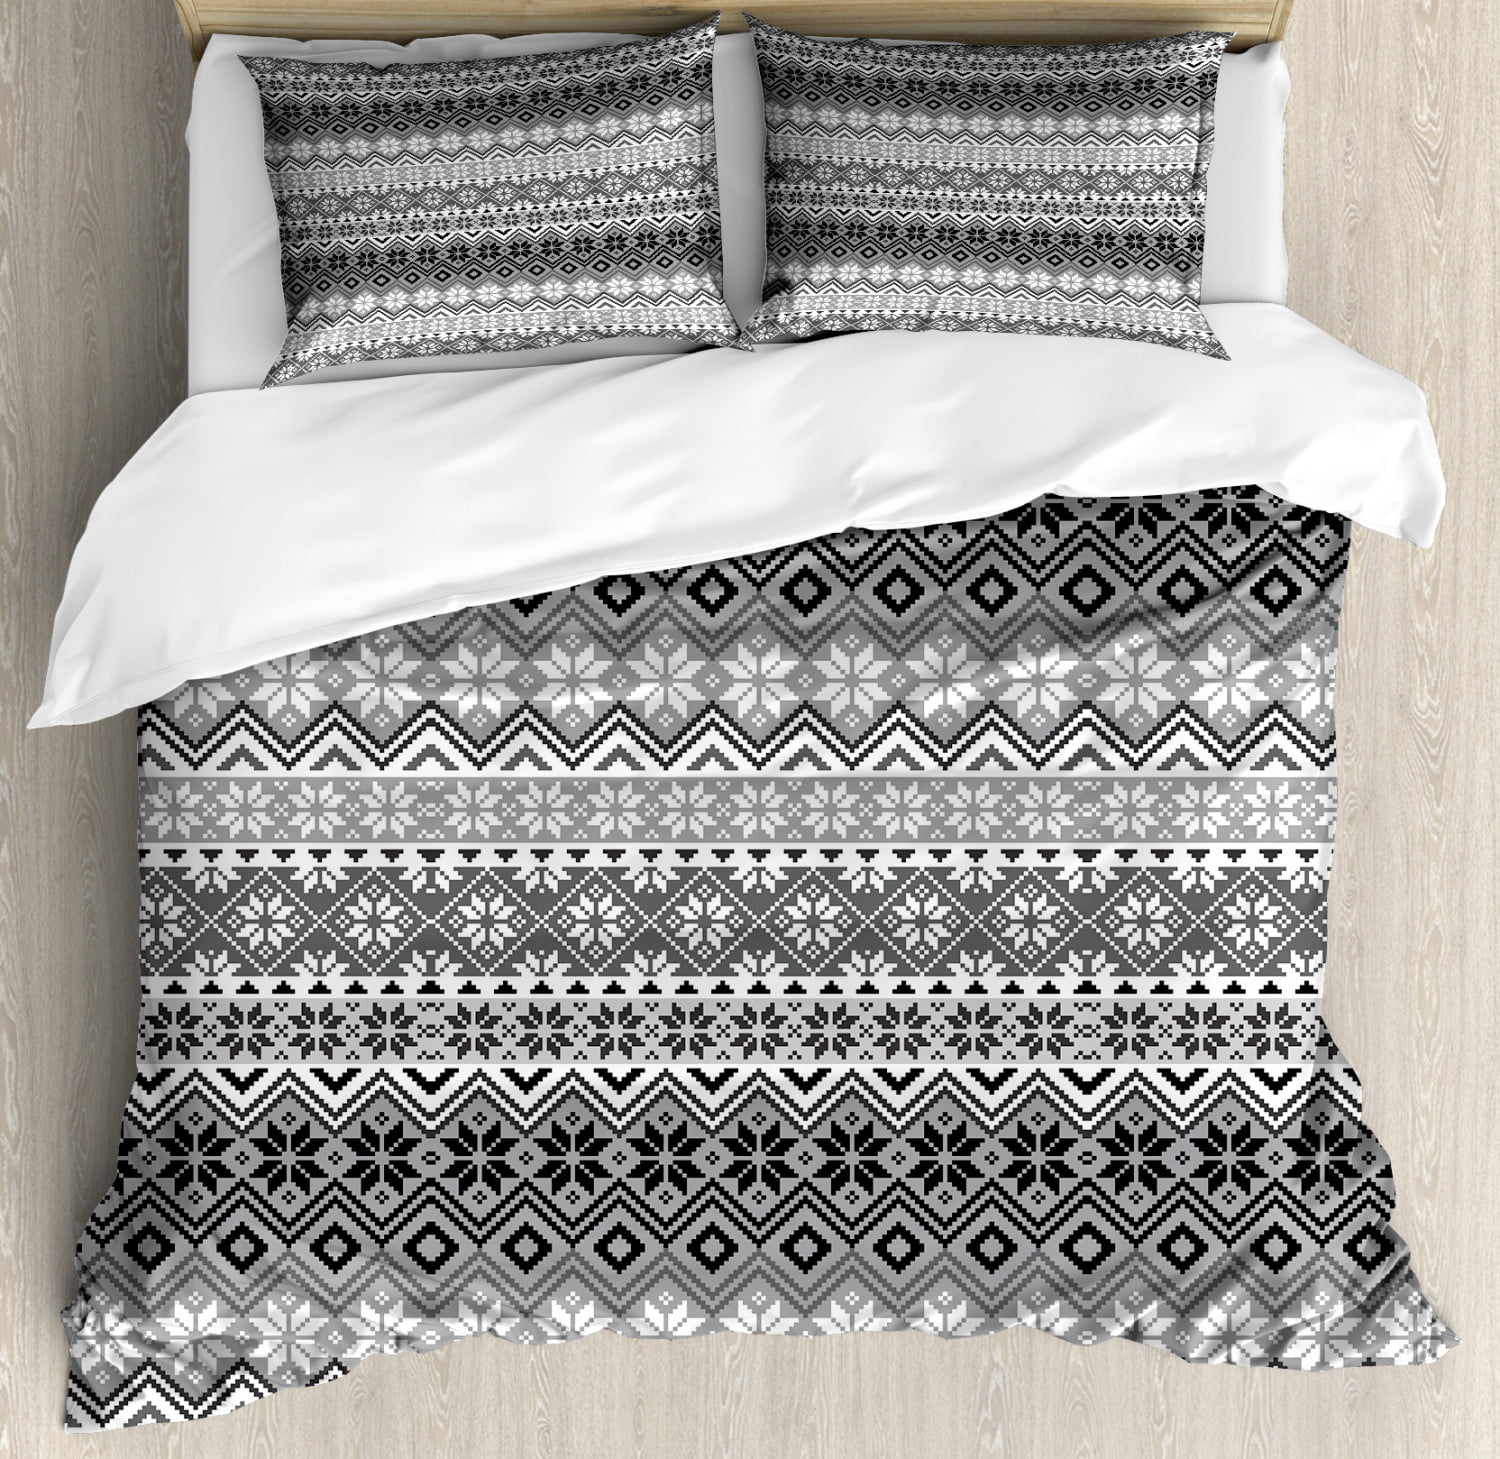 Nordic Floral Flannel 100% Brushed Cotton Thermal Duvet Cover Sets Bedding Sets 